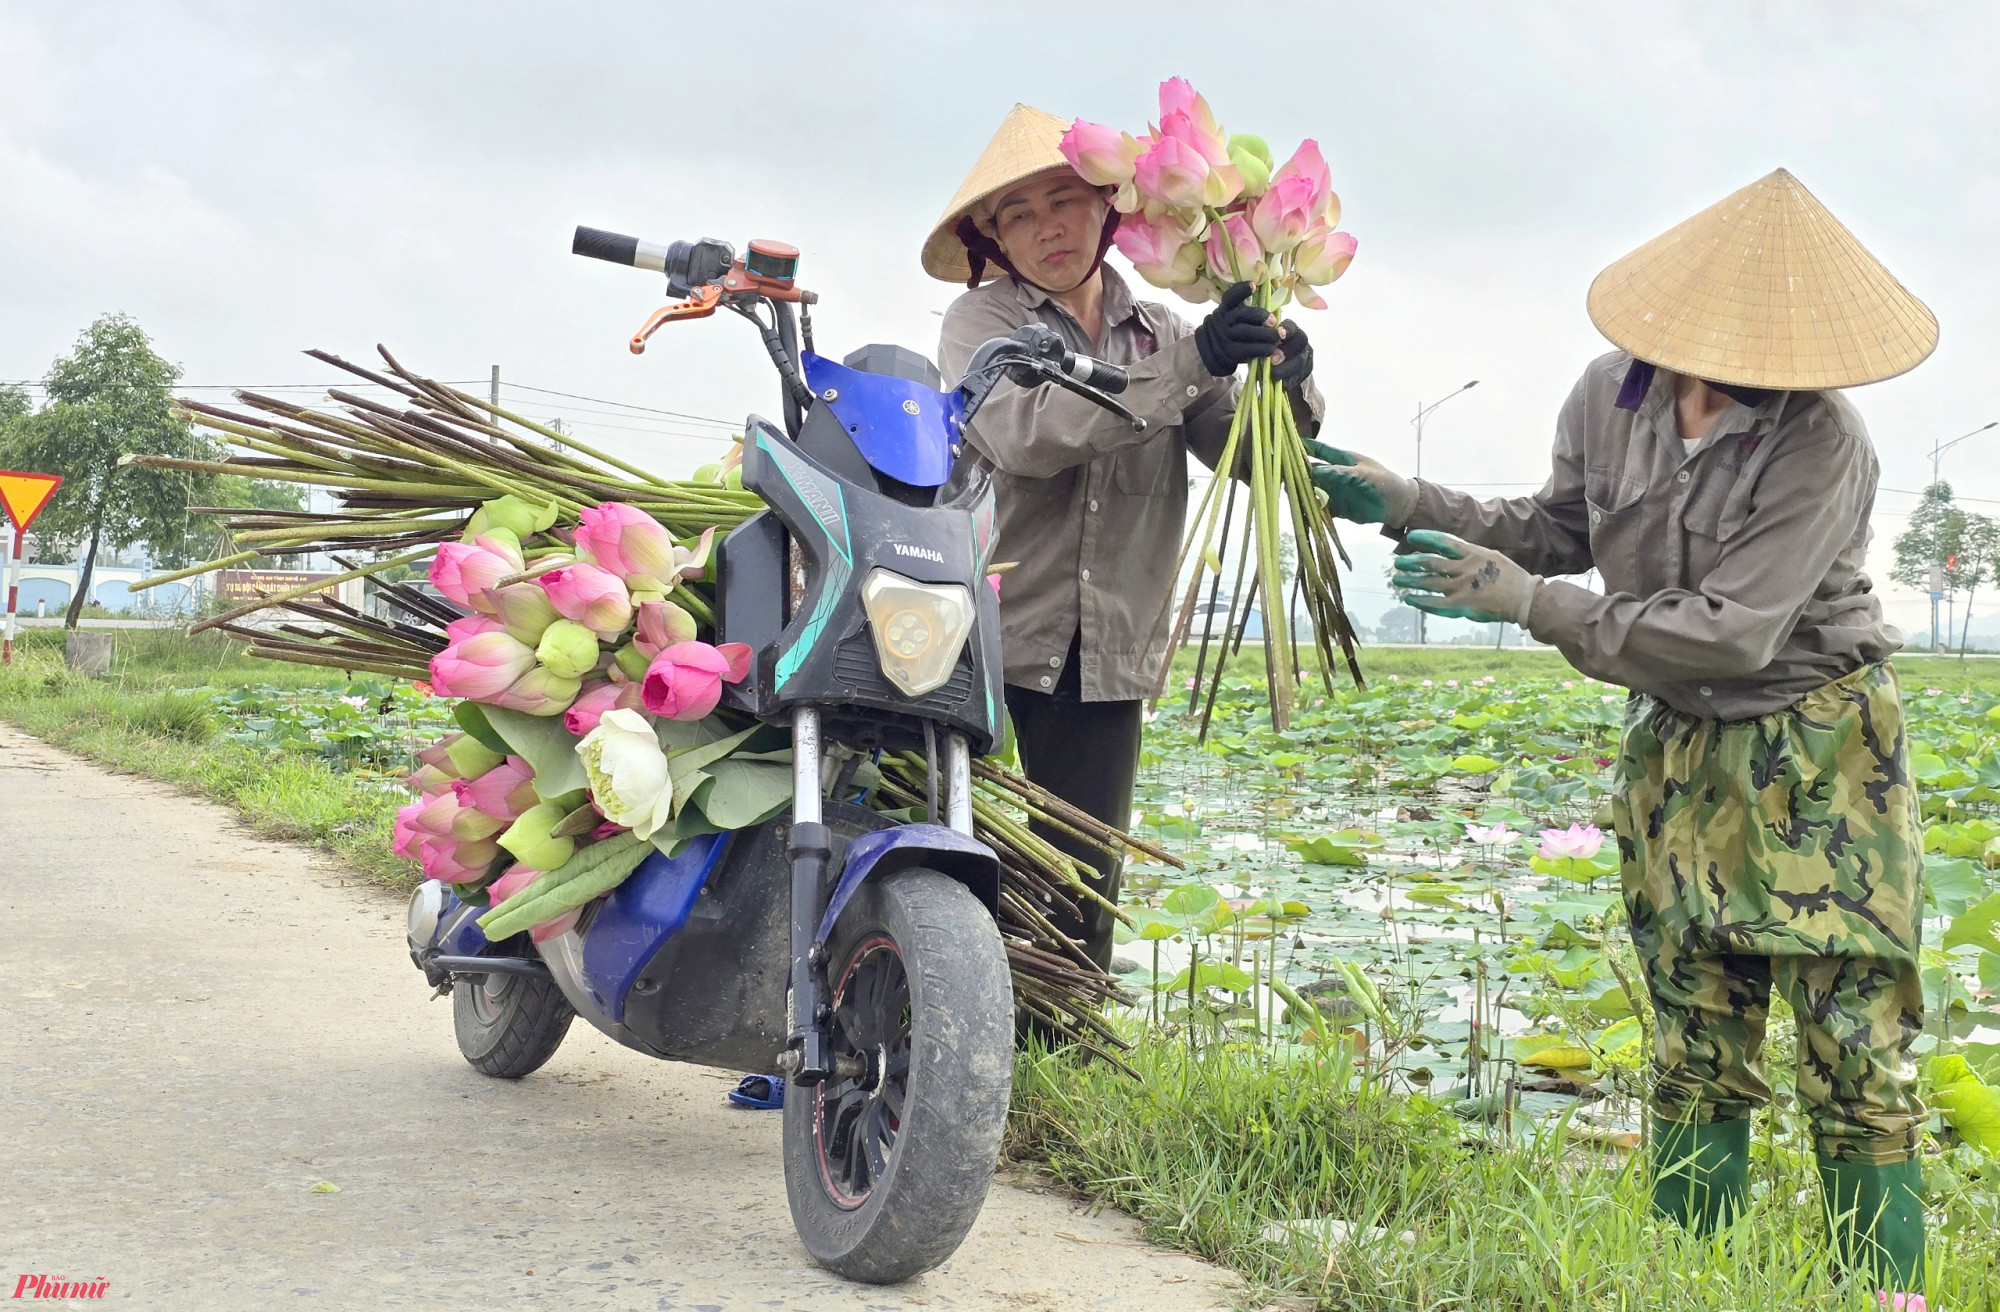 “Mùa thu hoạch sen kéo dài từ tháng 5 đến tháng 8. Nhưng dịp này vẫn cao điểm nhất khi có nhiều đoàn khách về quê Bác dâng hương thường dừng lại mua hoa sen” - bà Hà nói.